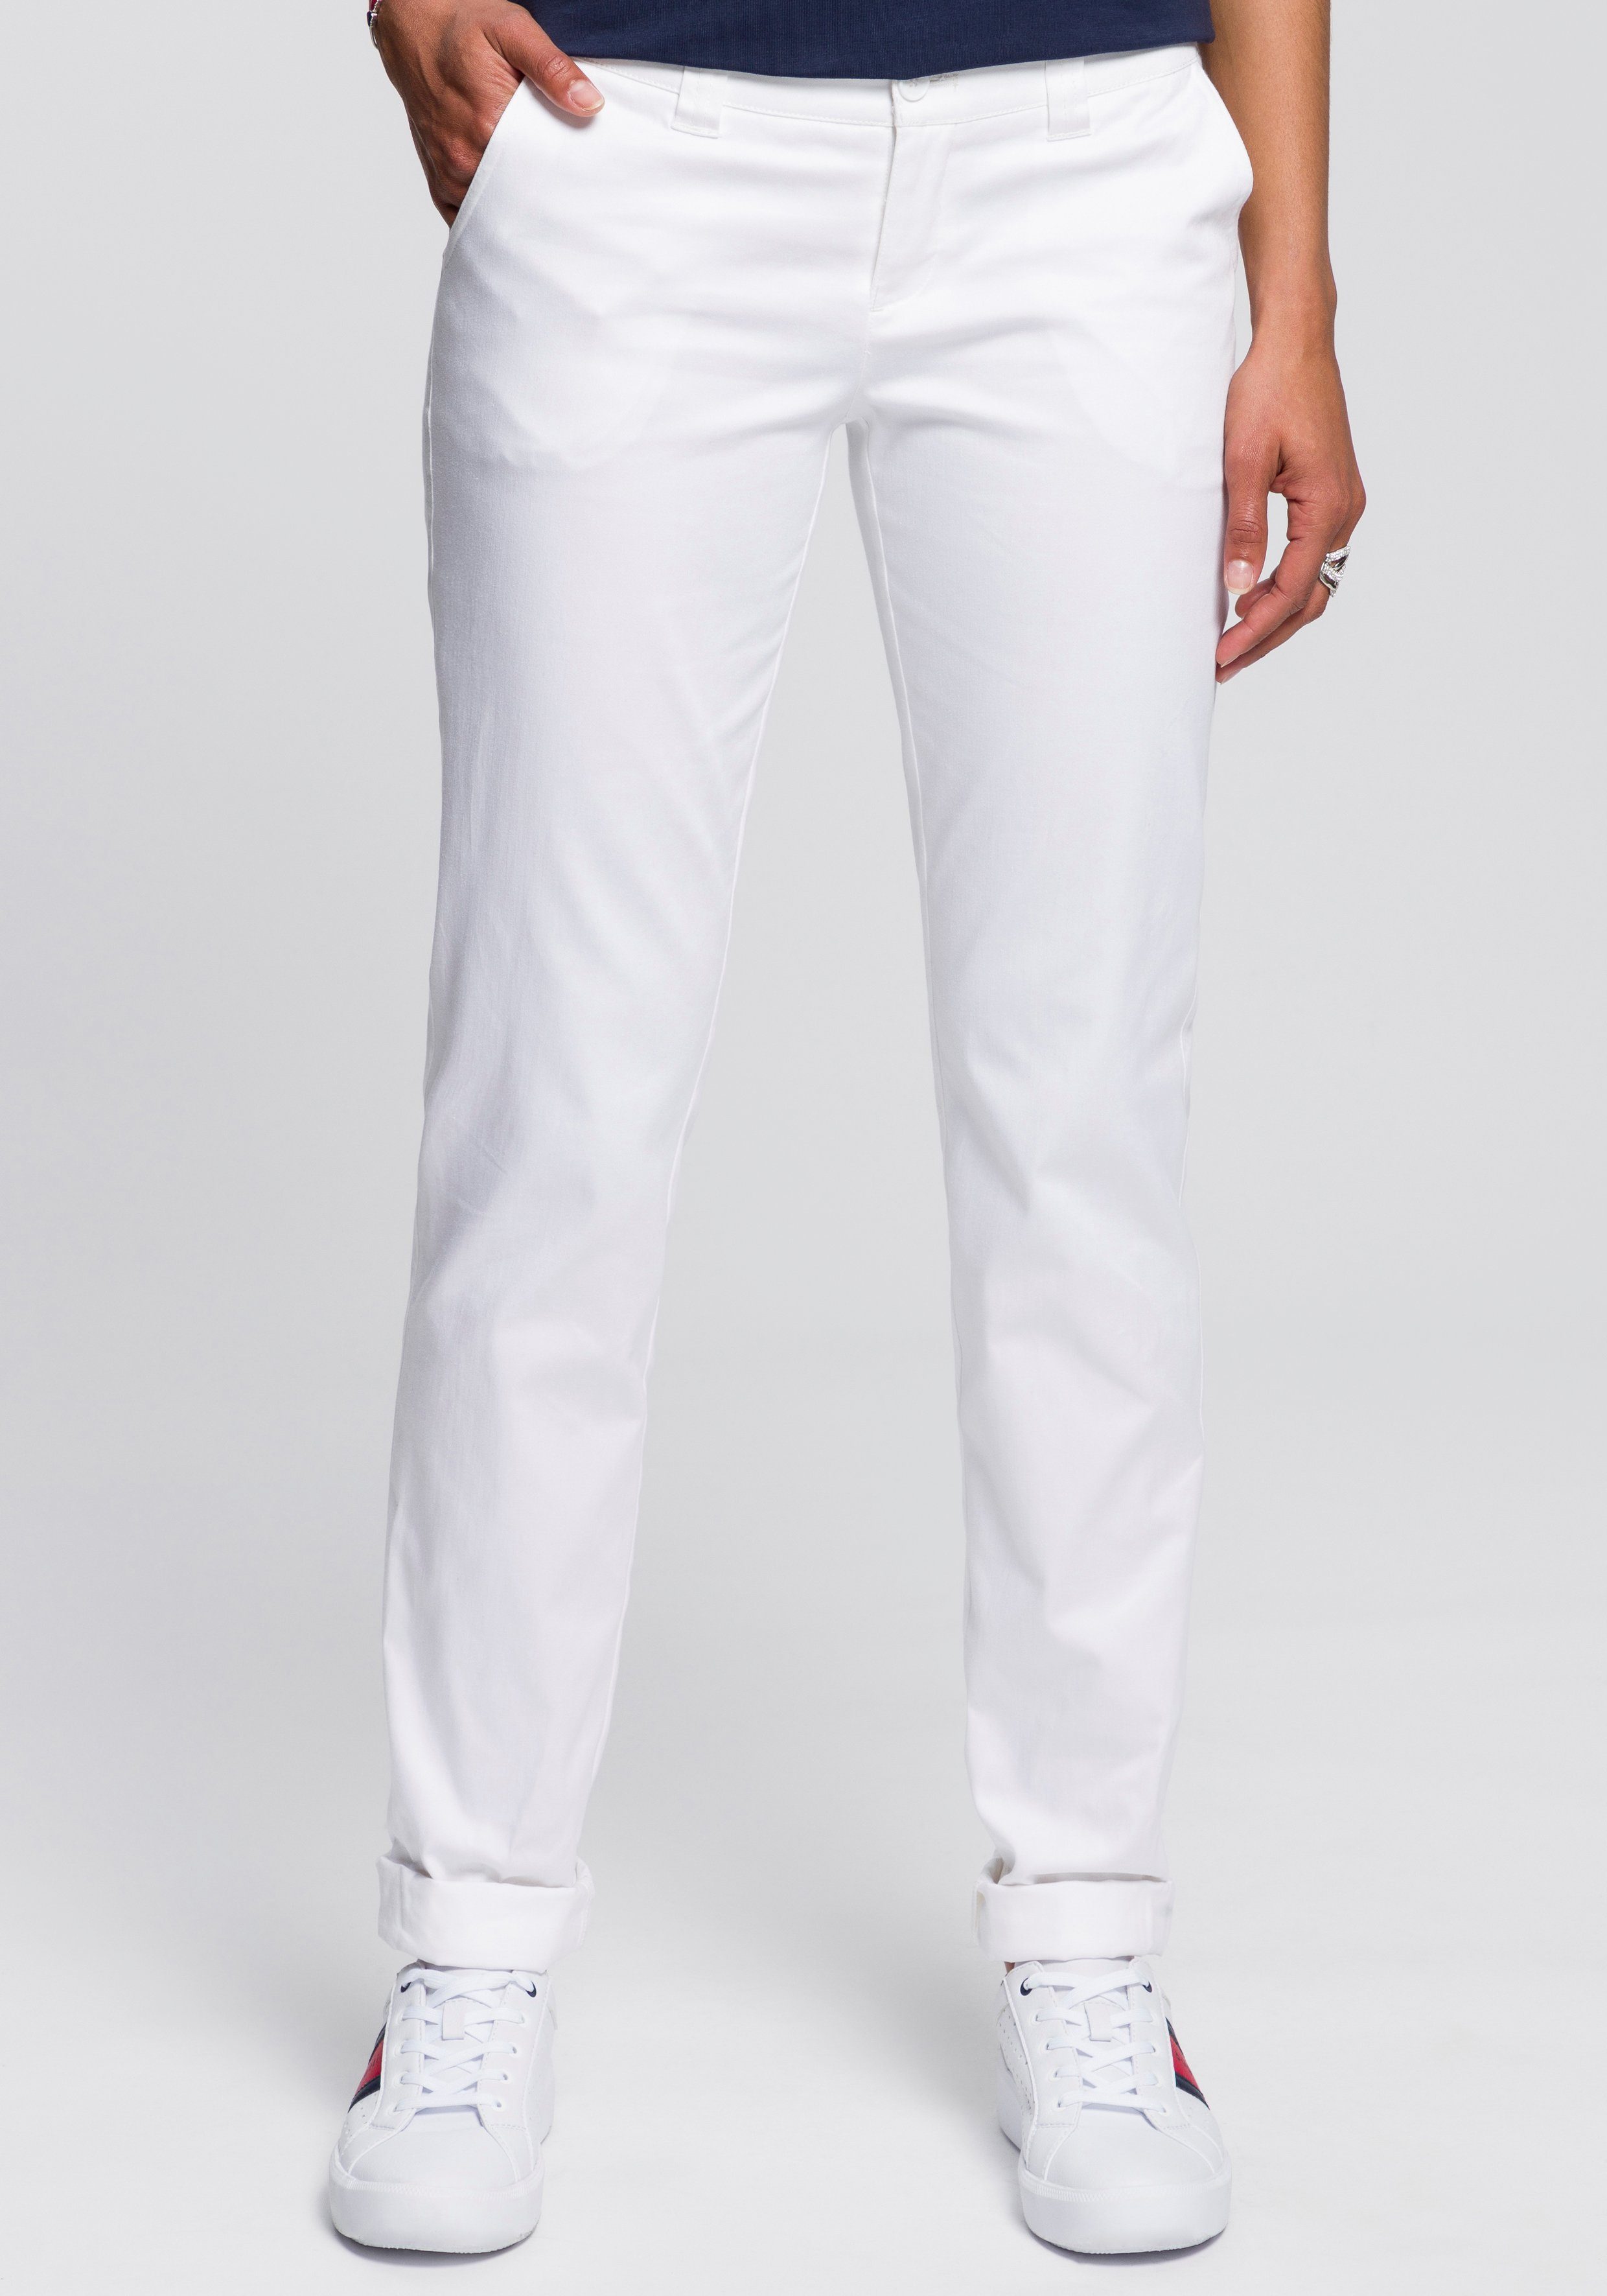 Schwarz-weiße Hosen für Damen online kaufen | OTTO